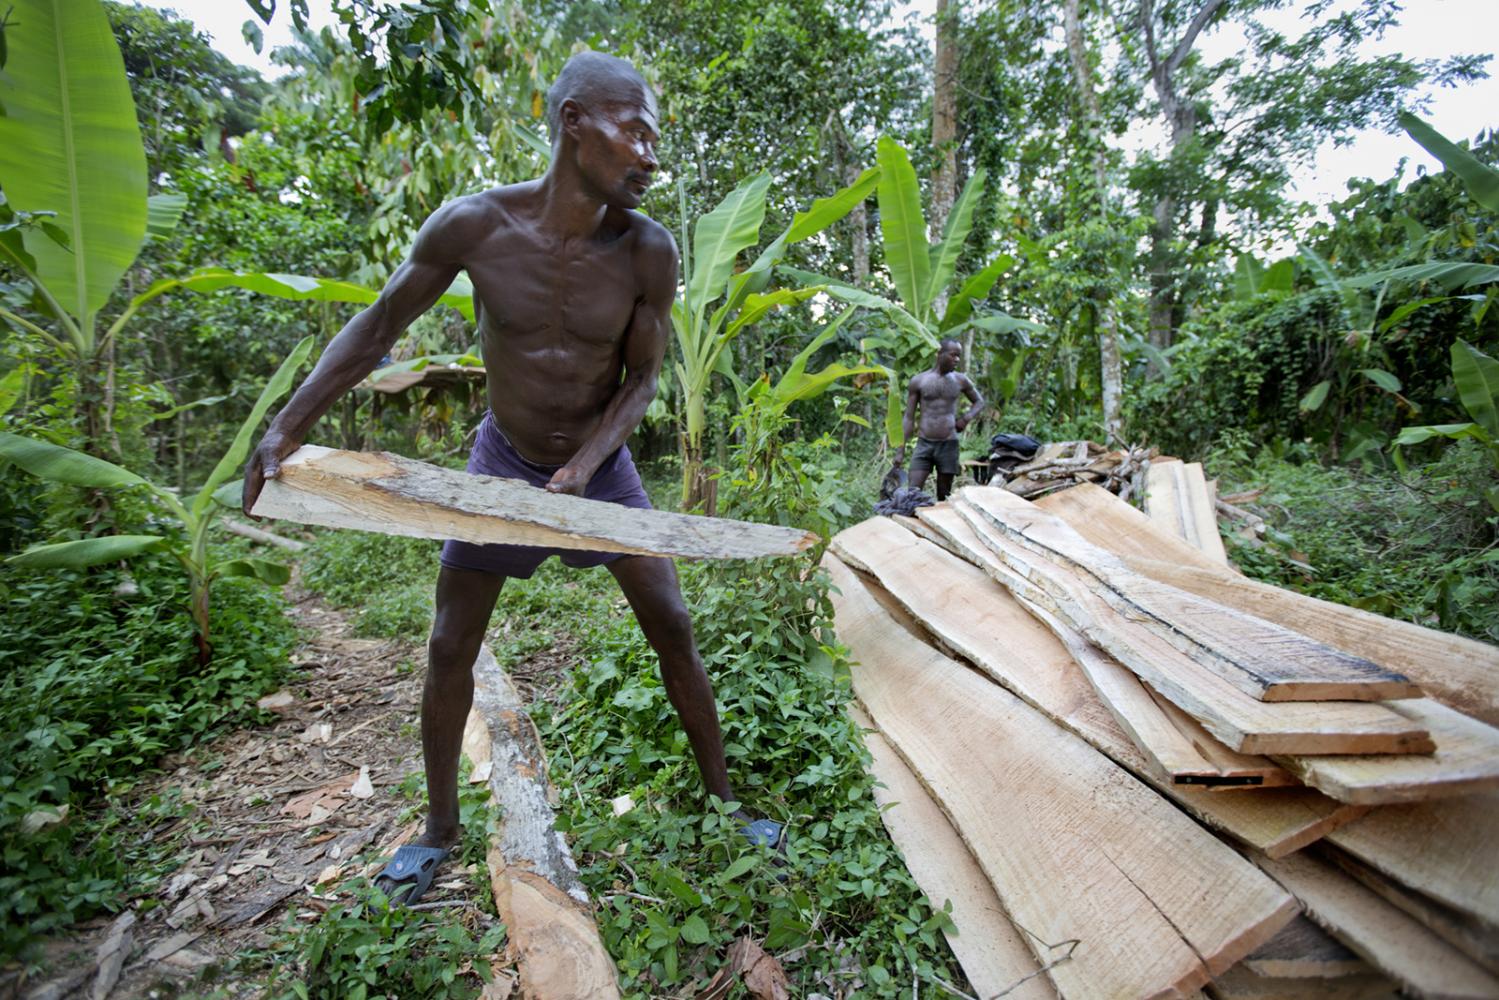 Men work hand sawing lumber in Milot, Haiti.